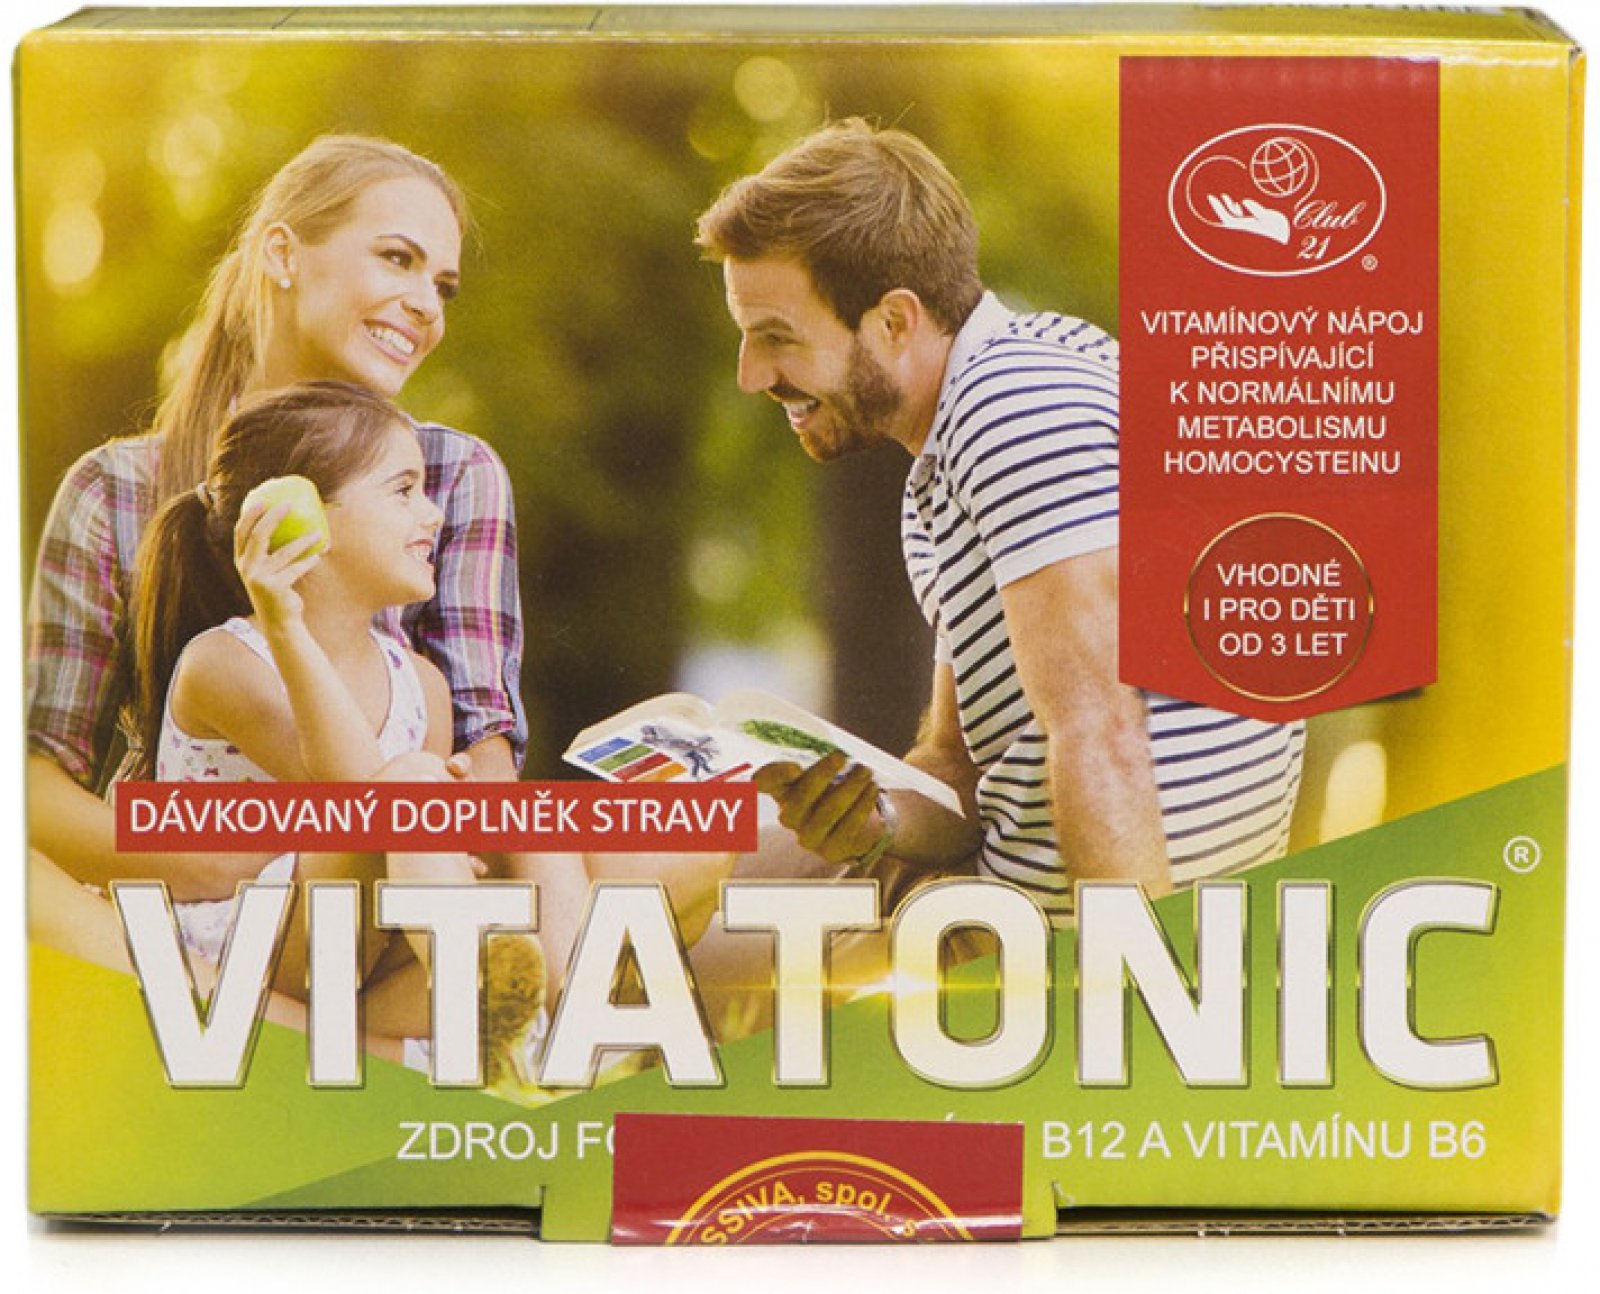 Vitatonic - vitam. nápoj přispívající k normálnímu metabolismu homocysteinu 600 g